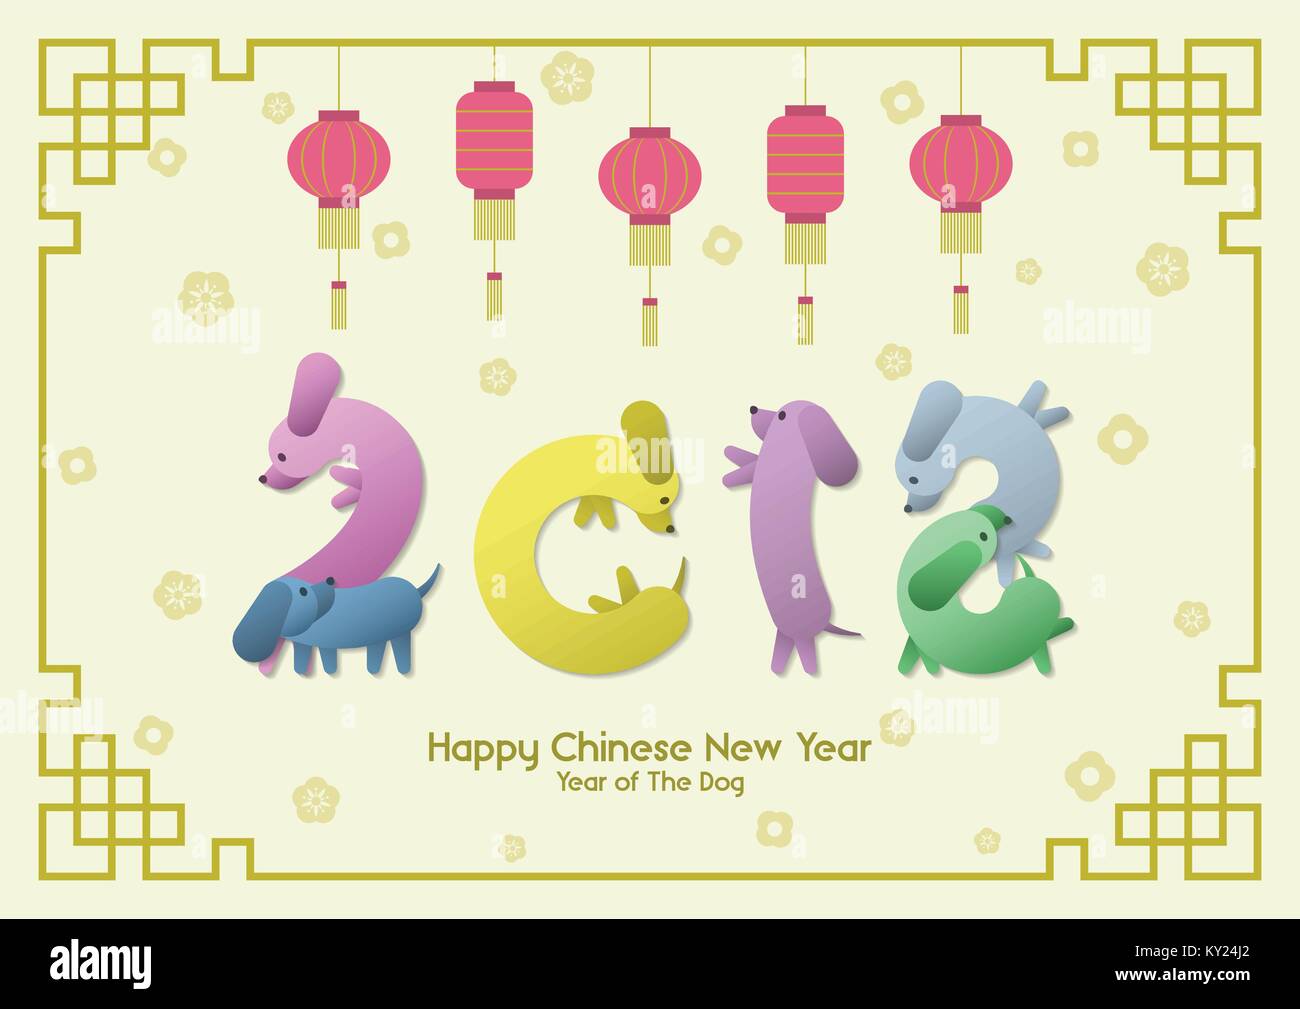 Frohes Chinesisches neues Jahr, das Jahr des Hundes, bunte lustige Wurst Dackel Hunde darstellen wie Anzahl 2018 mit hängenden roten Laternen, gold Asiatische flowe Stock Vektor